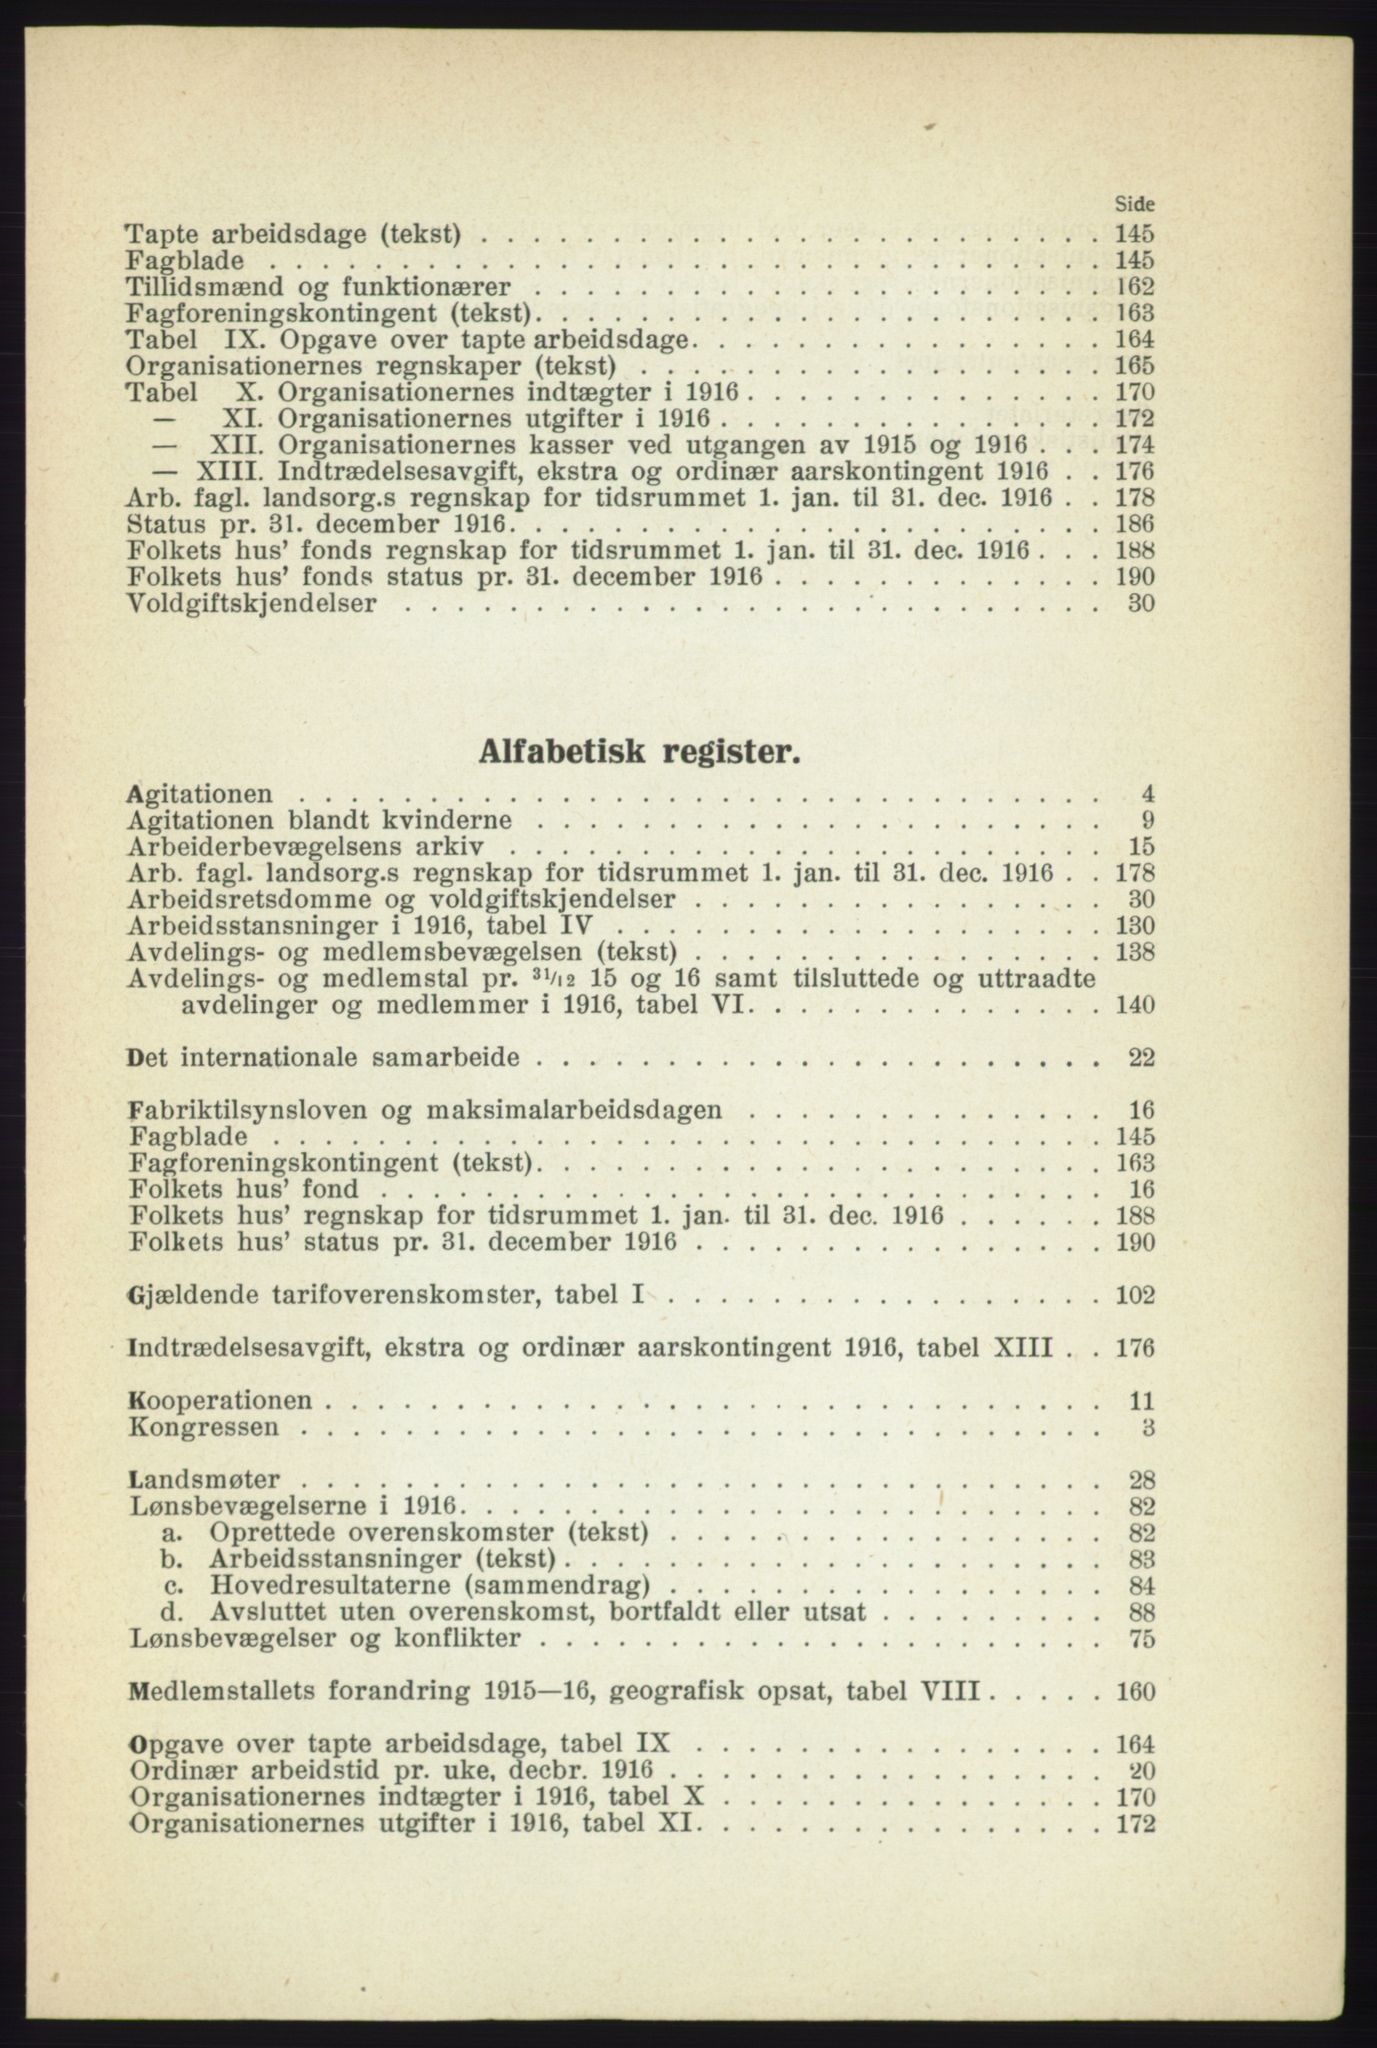 Landsorganisasjonen i Norge - publikasjoner, AAB/-/-/-: Landsorganisationens beretning for 1916, 1916